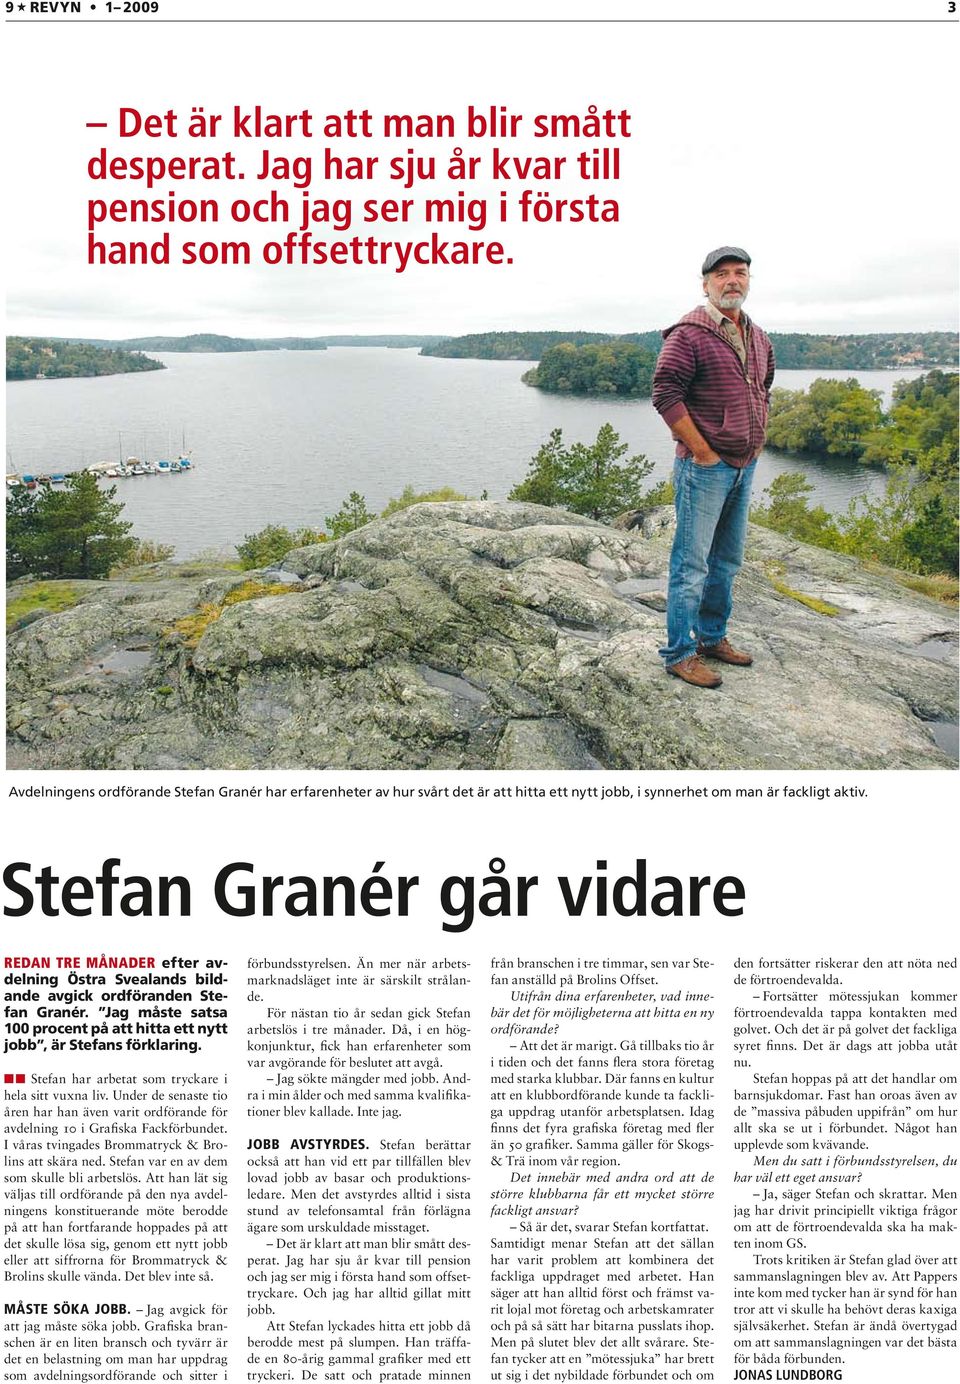 Stefan Granér går vidare Redan tre månader efter avdelning Östra Svealands bildande avgick ordföranden Stefan Granér. Jag måste satsa 100 procent på att hitta ett nytt jobb, är Stefans förklaring.